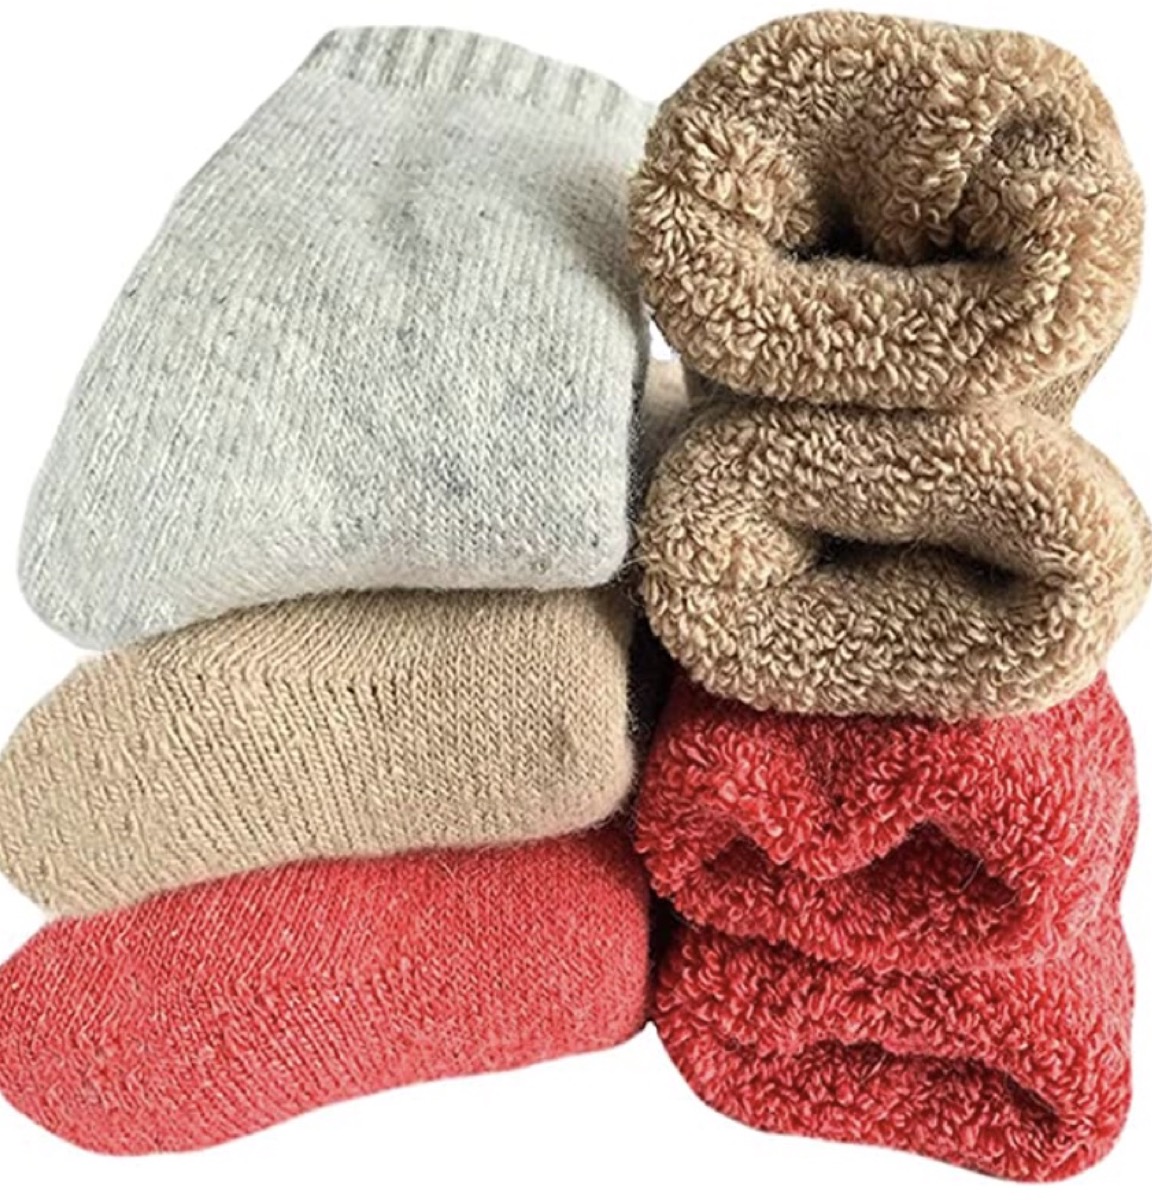 multicolored wool socks